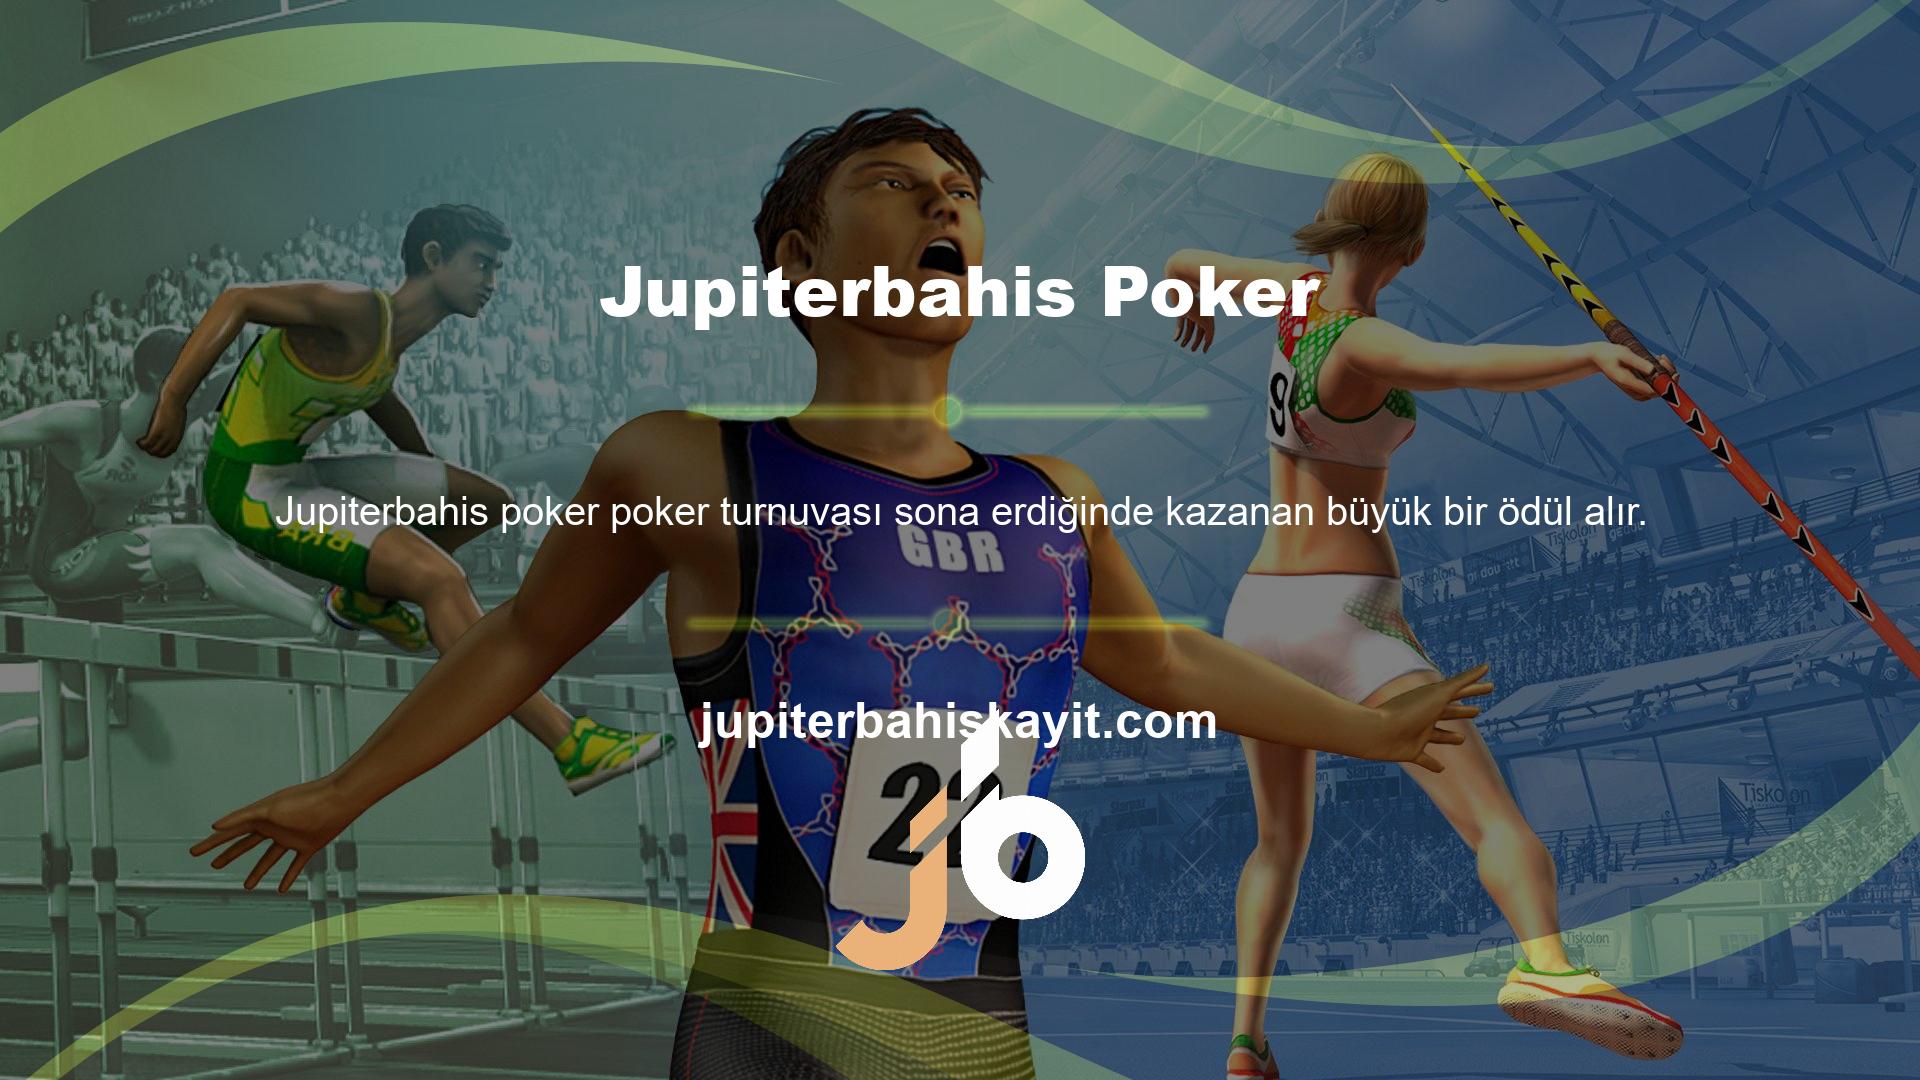 Jupiterbahis bir casino sitesi olduğundan turnuvalar ve buna benzer sürpriz oyunlar sıklıkla düzenlenmektedir